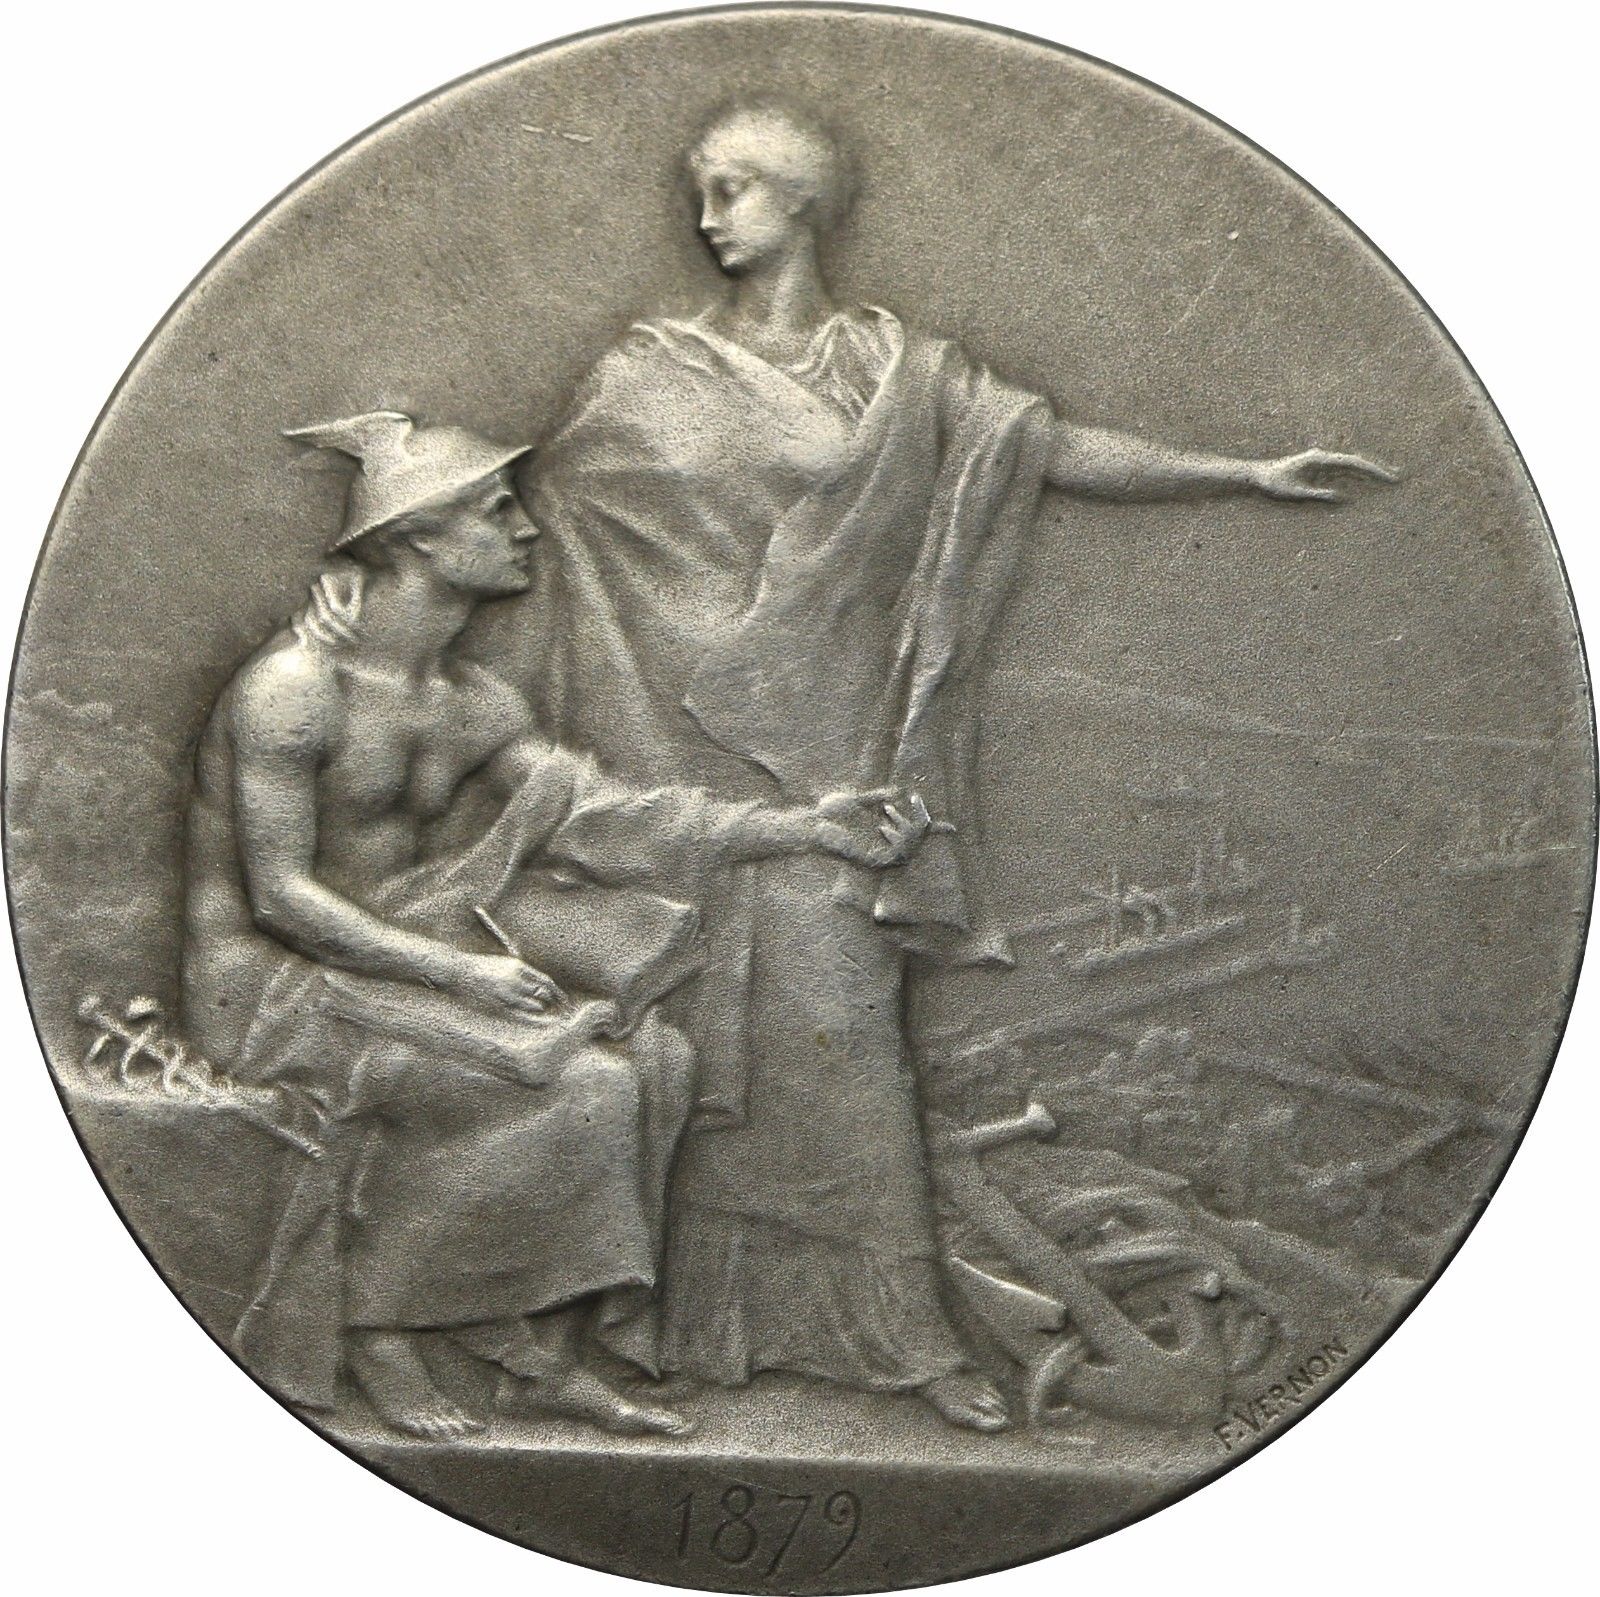 France – 1879 Art Nouveau Silver Medal by Vernon, Train, Railroad